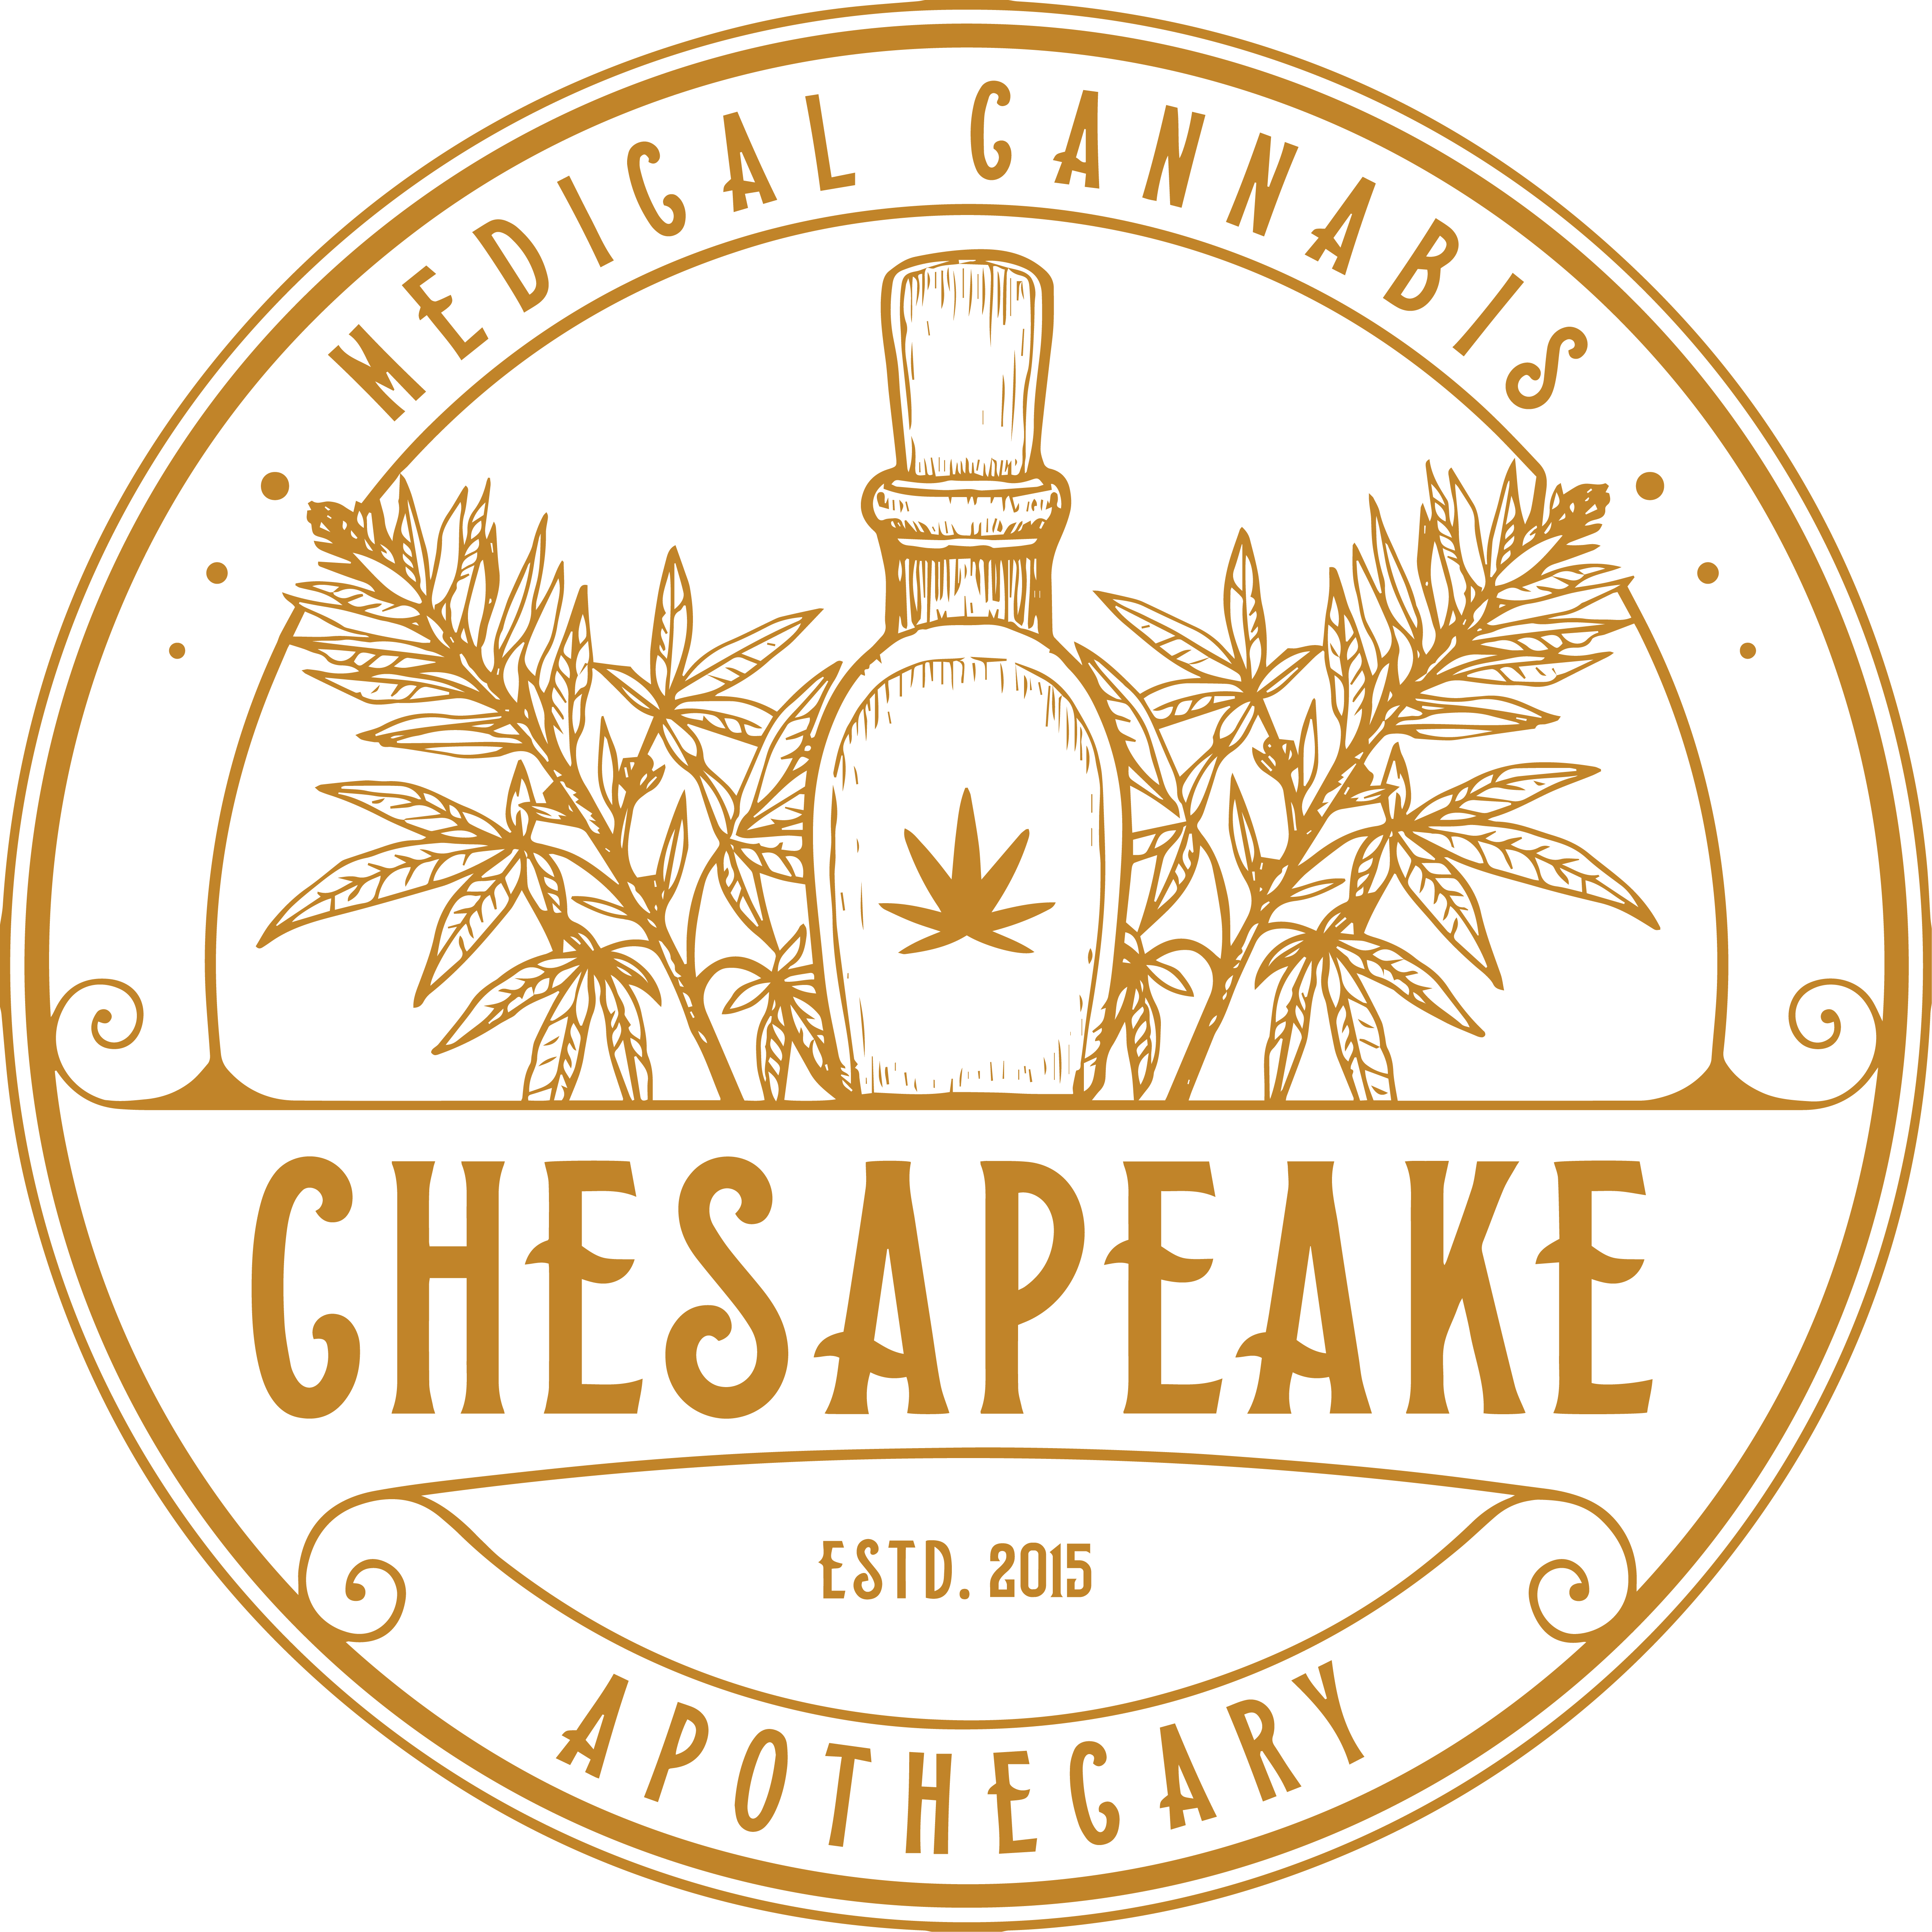 Chesapeake Apothecary-logo